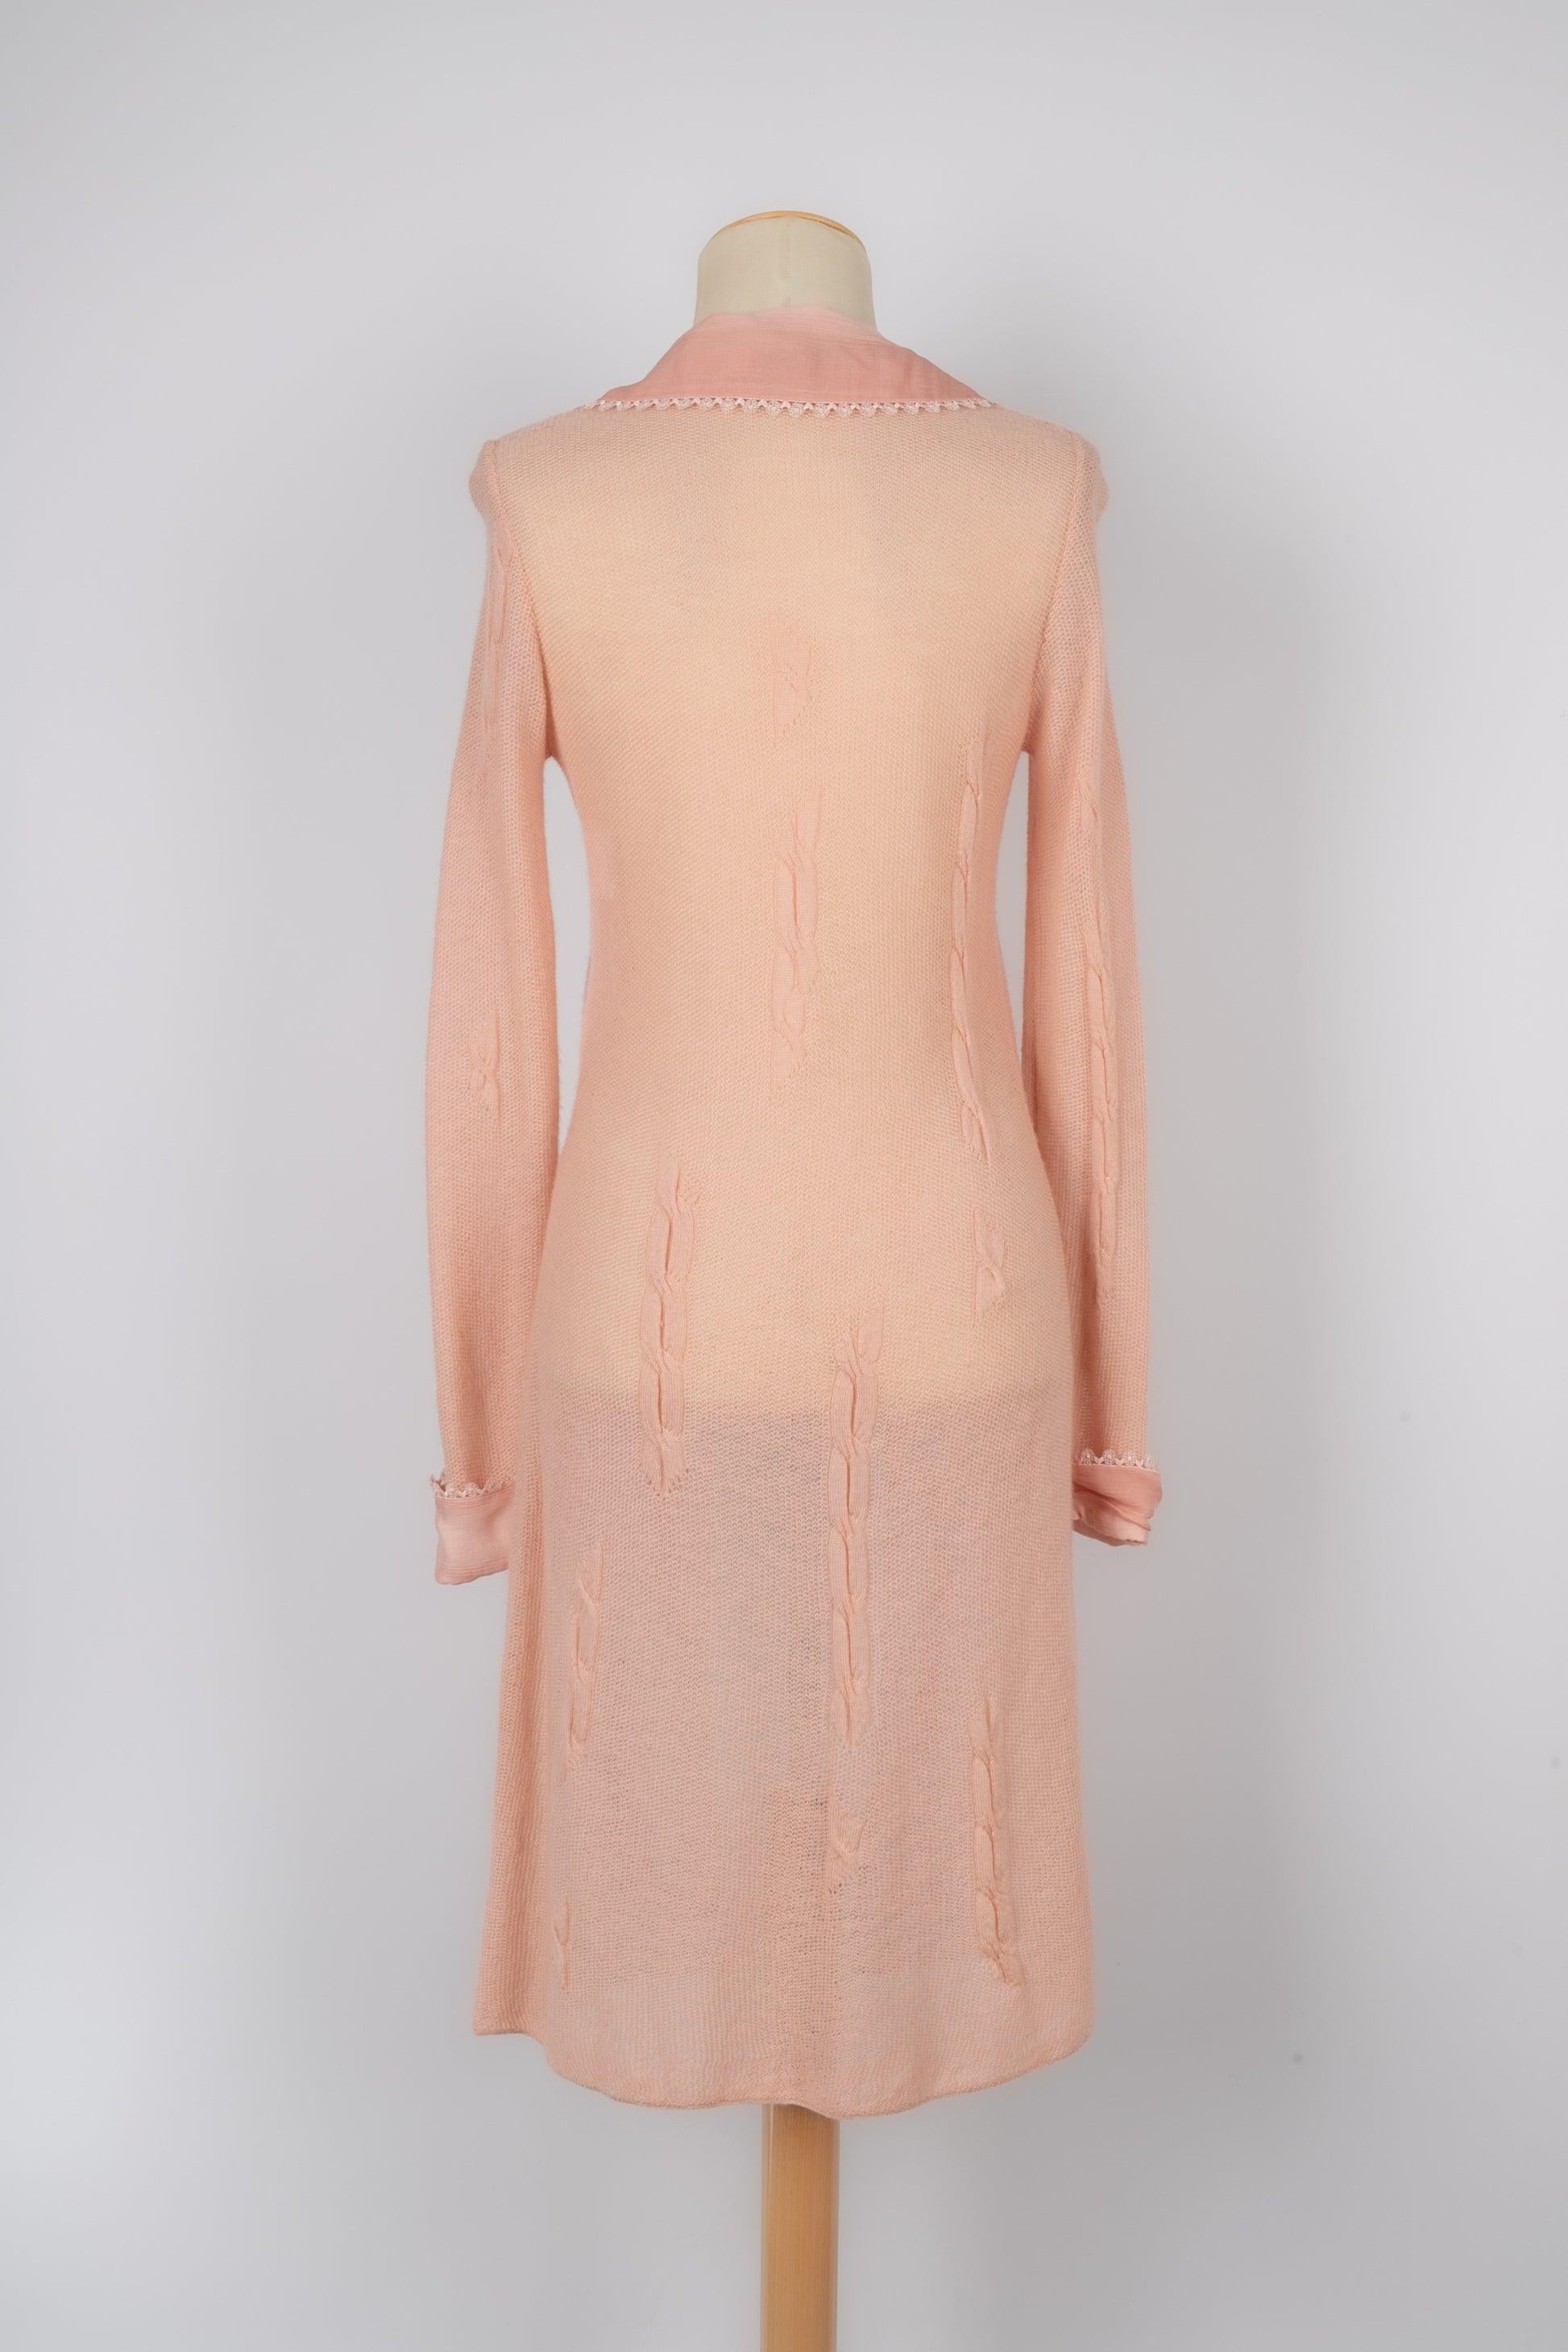 Dior Cashmere Long Cardigan In Excellent Condition For Sale In SAINT-OUEN-SUR-SEINE, FR